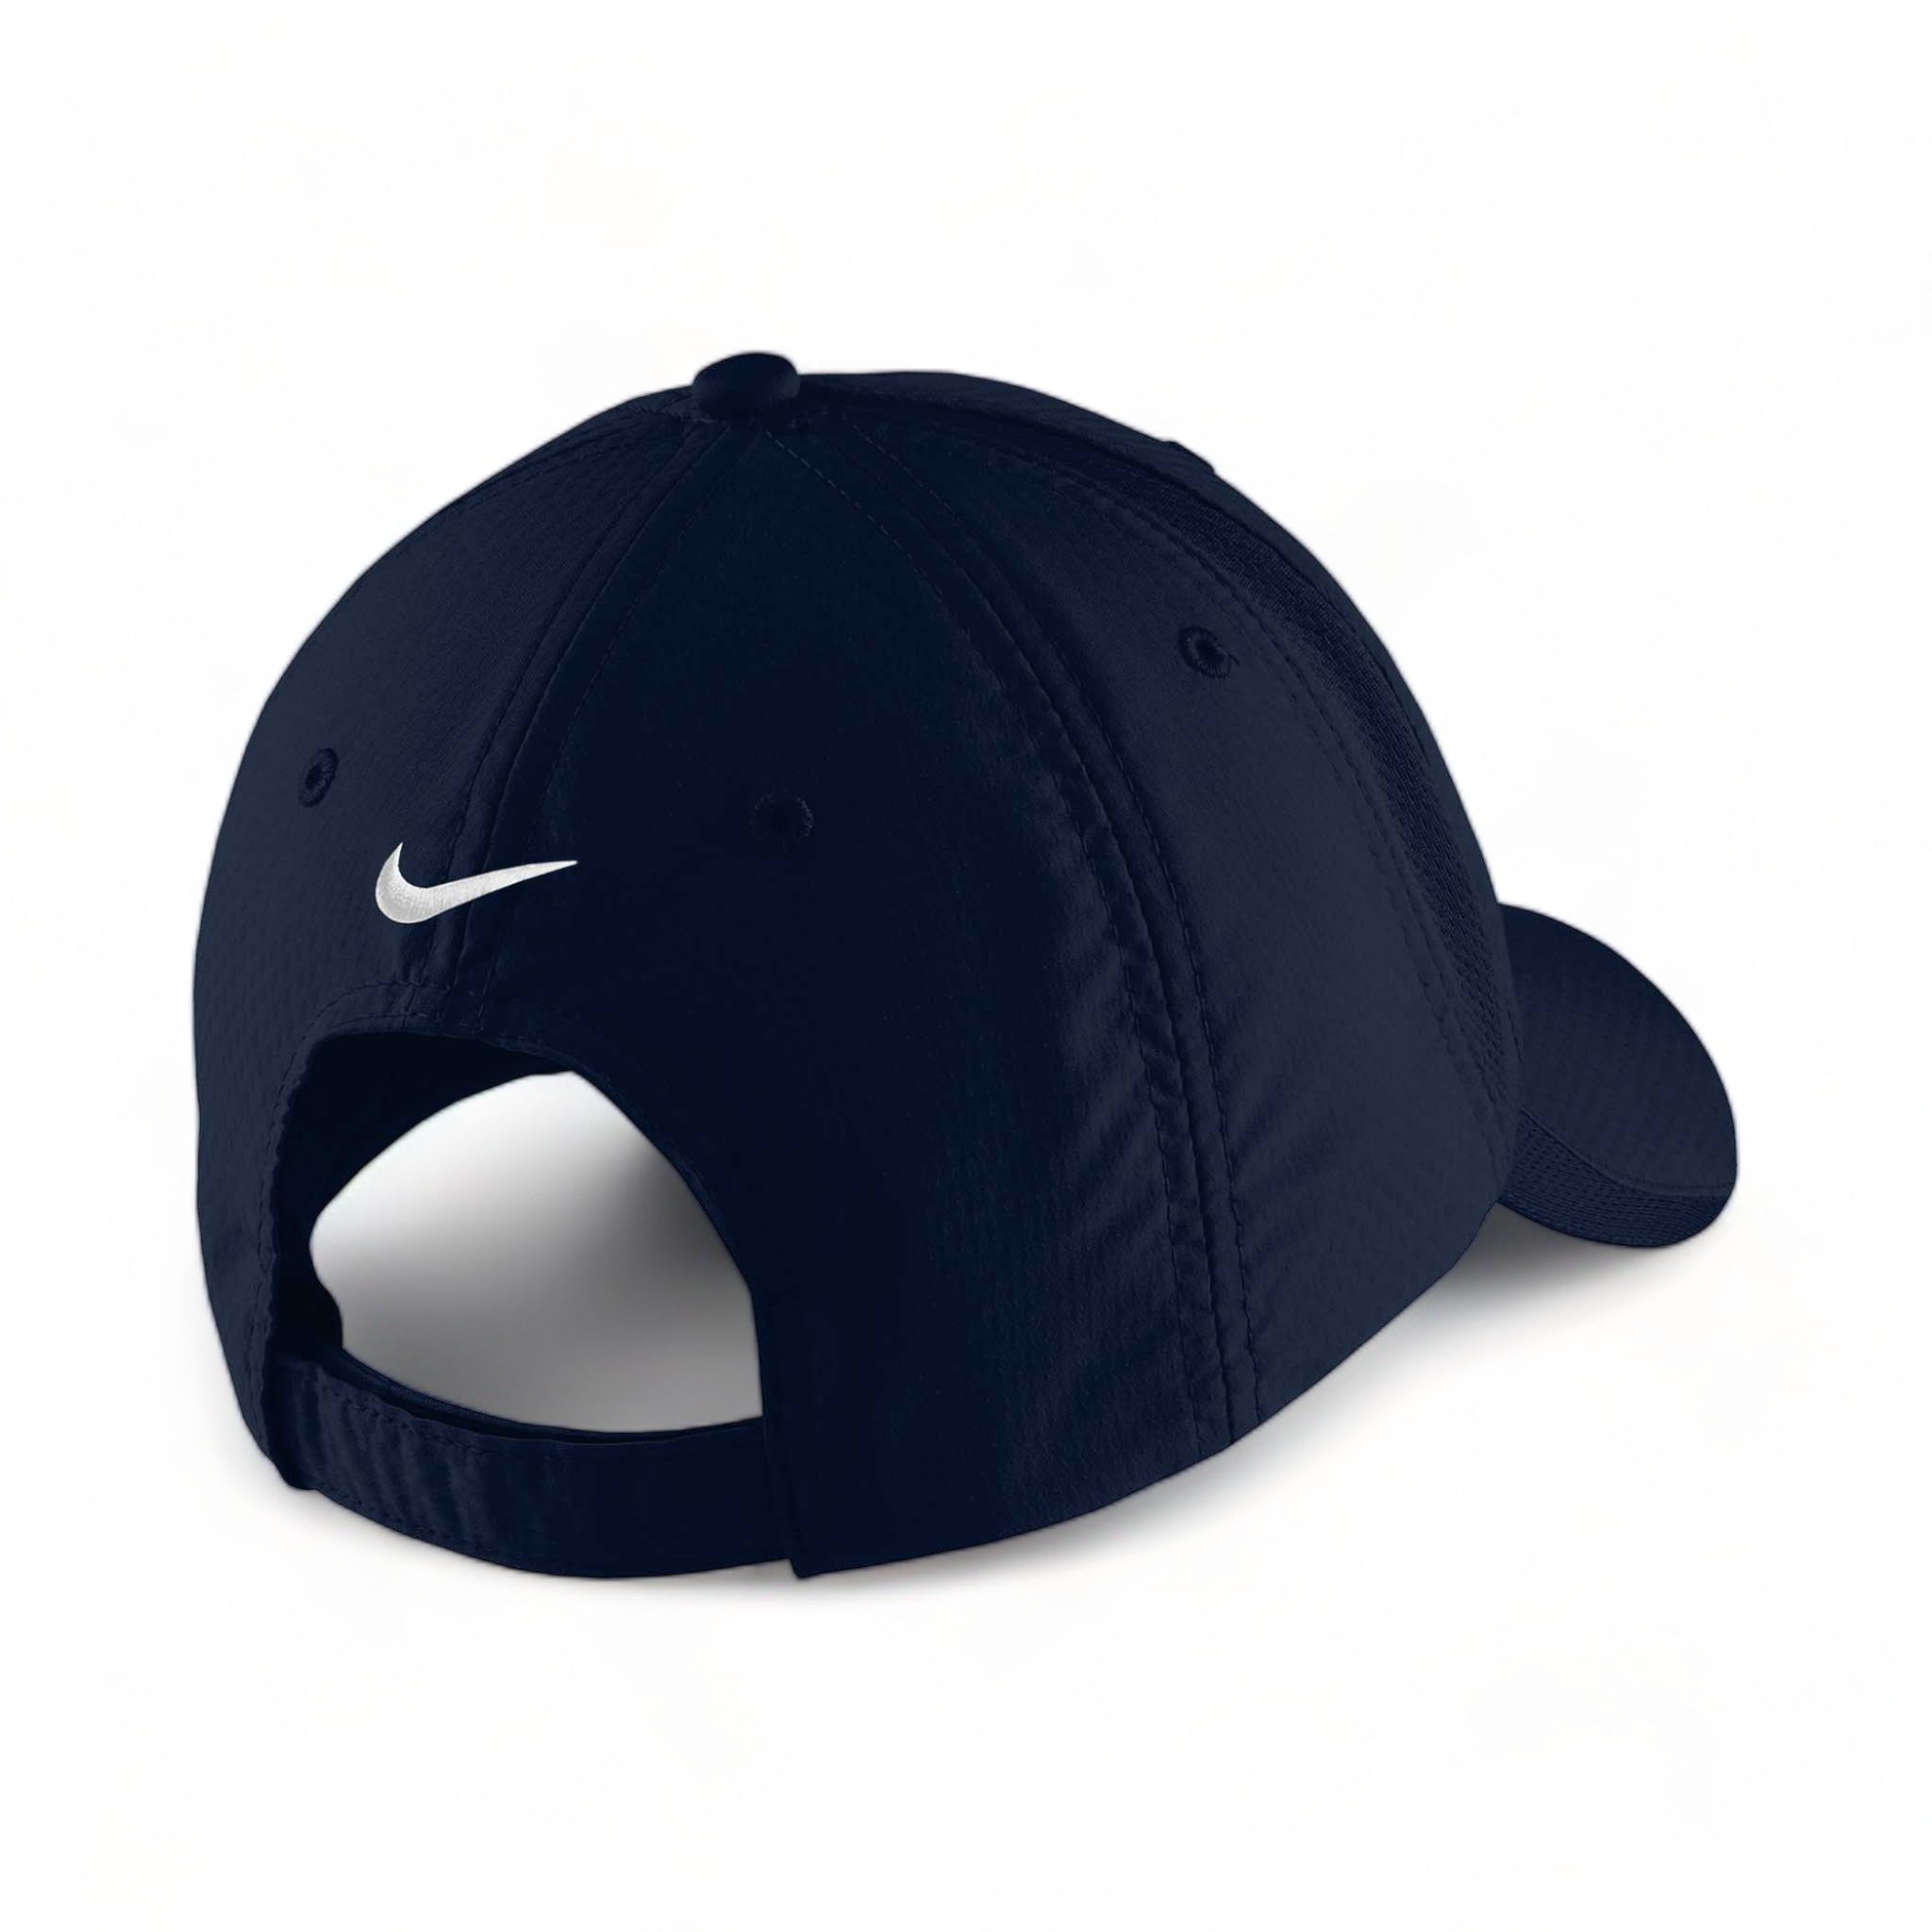 Back view of Nike NKFD9709 custom hat in navy